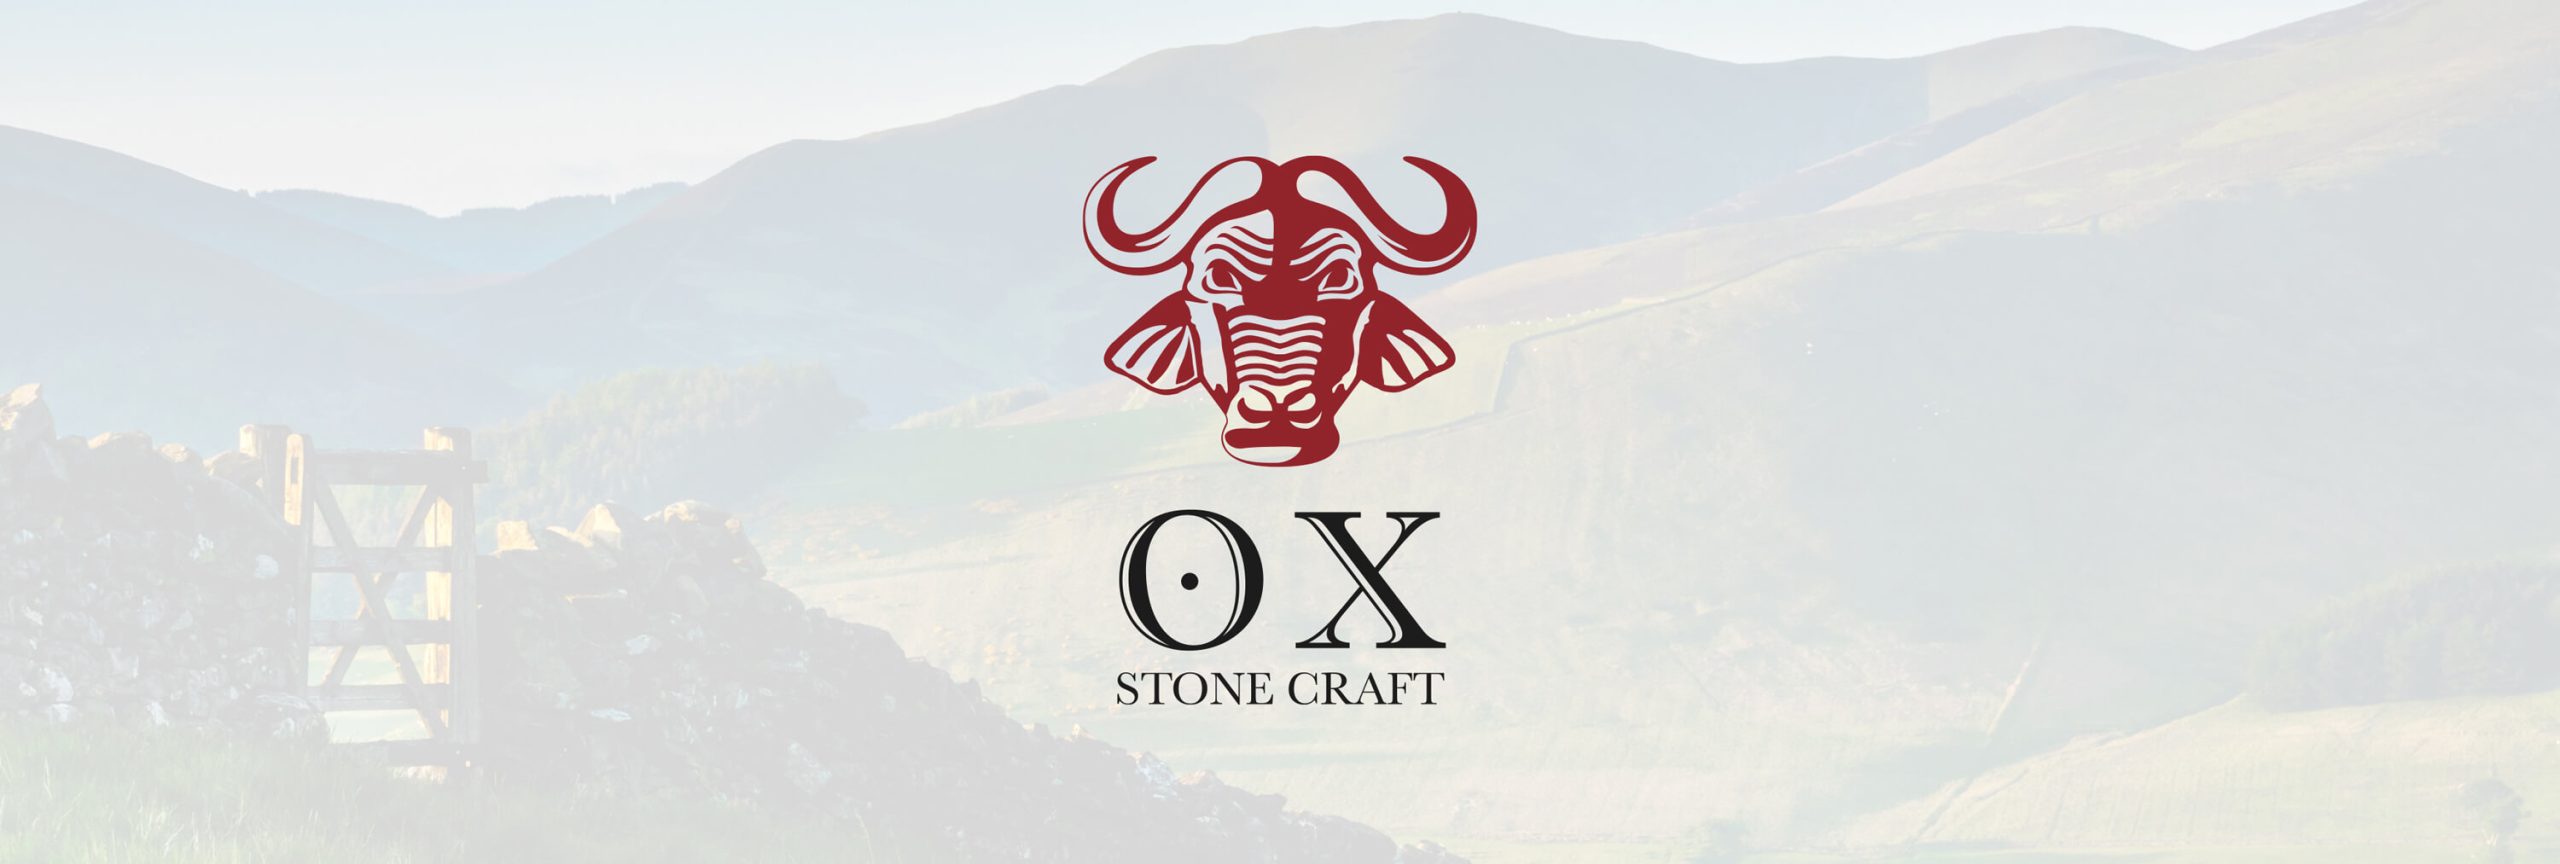 Ox Stone Craft